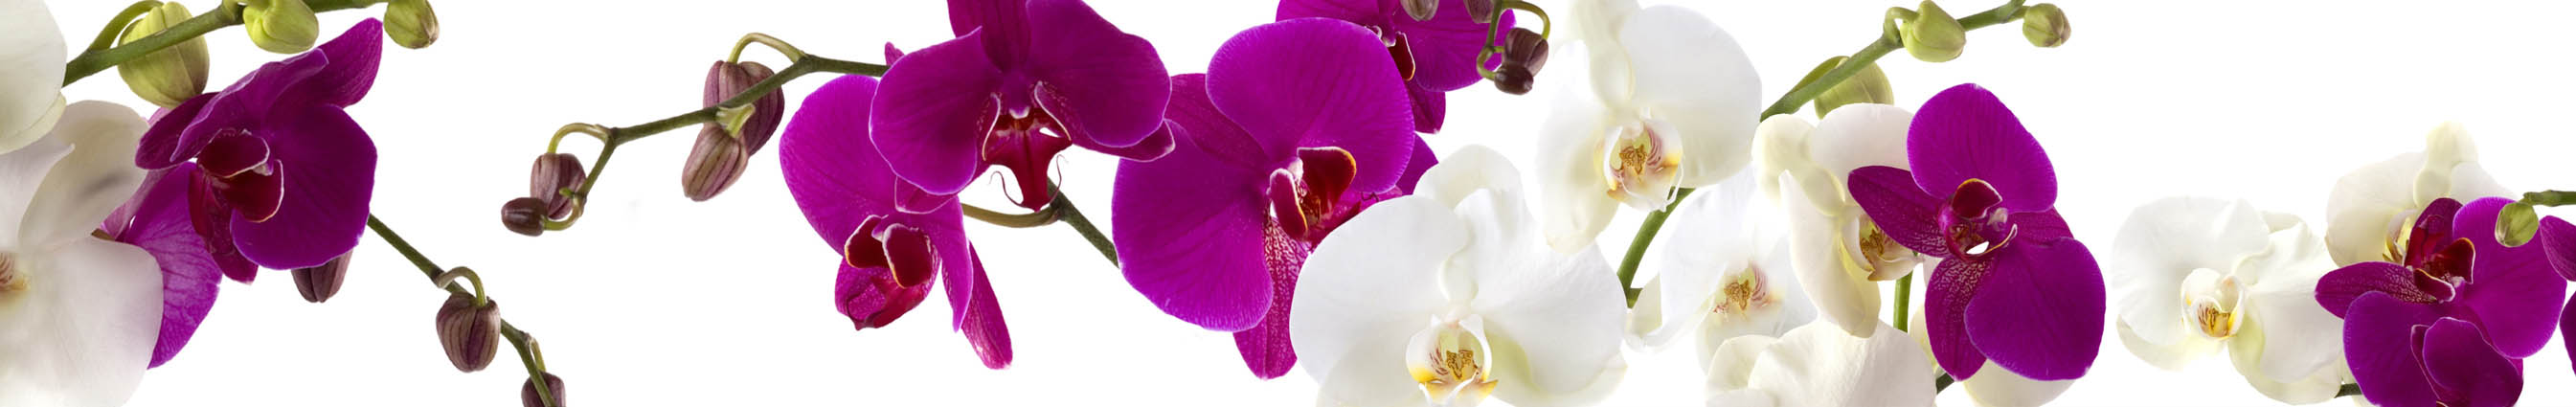 Крупные цветки орхидеи фиолетового цвета на скинали